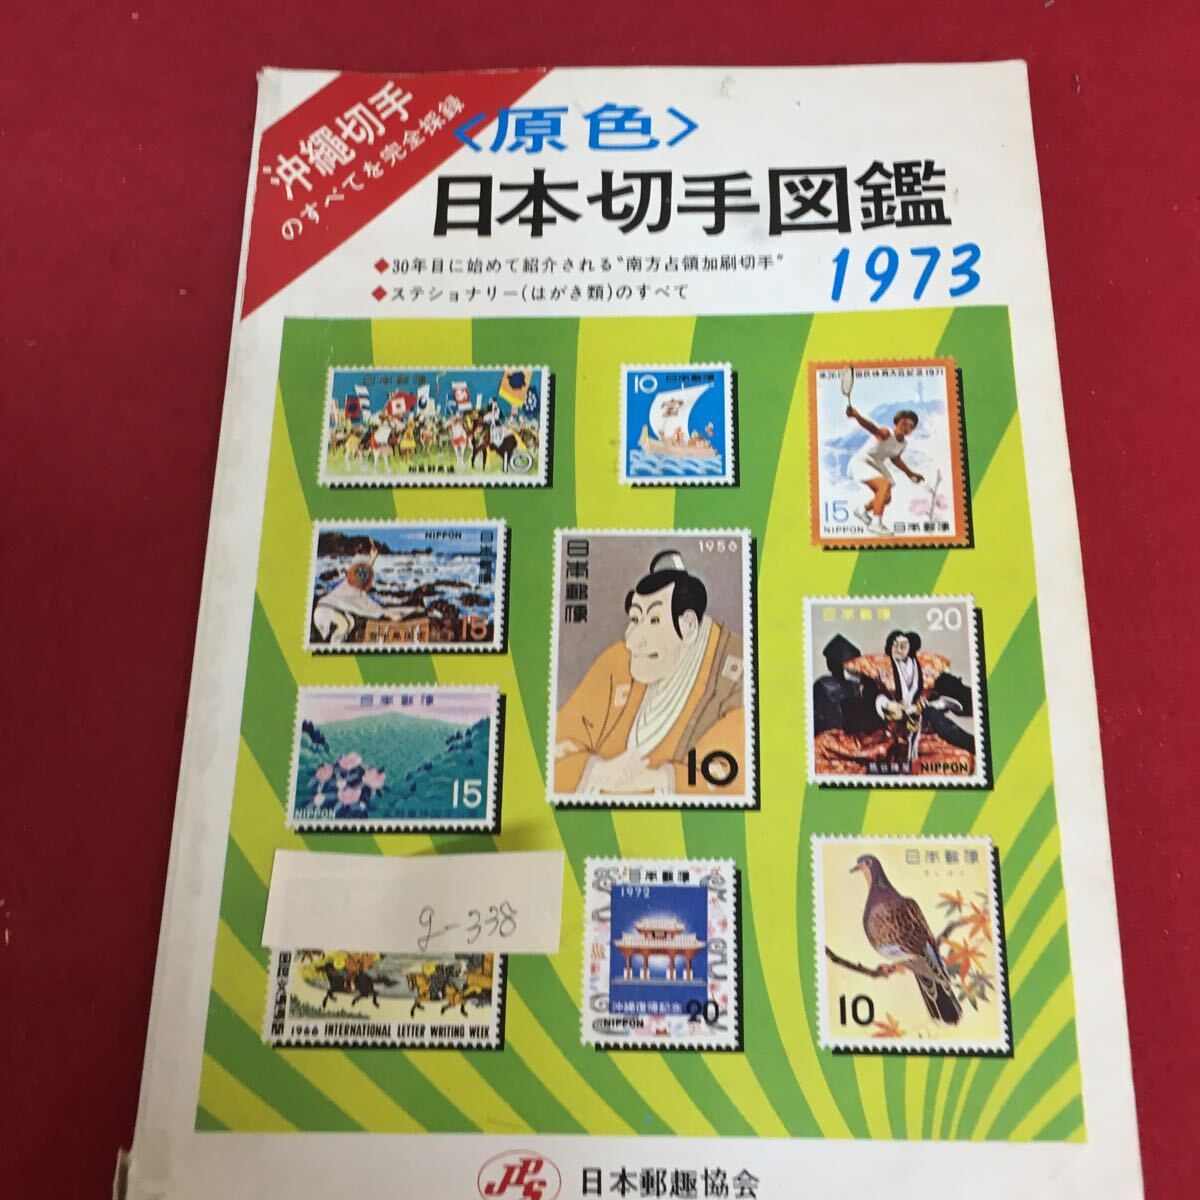 g-338 原色 日本切手図鑑 1973 沖縄切手のすべてを完全収録 ステショナリーのすべて 発行年月日記載なし※3 _画像1